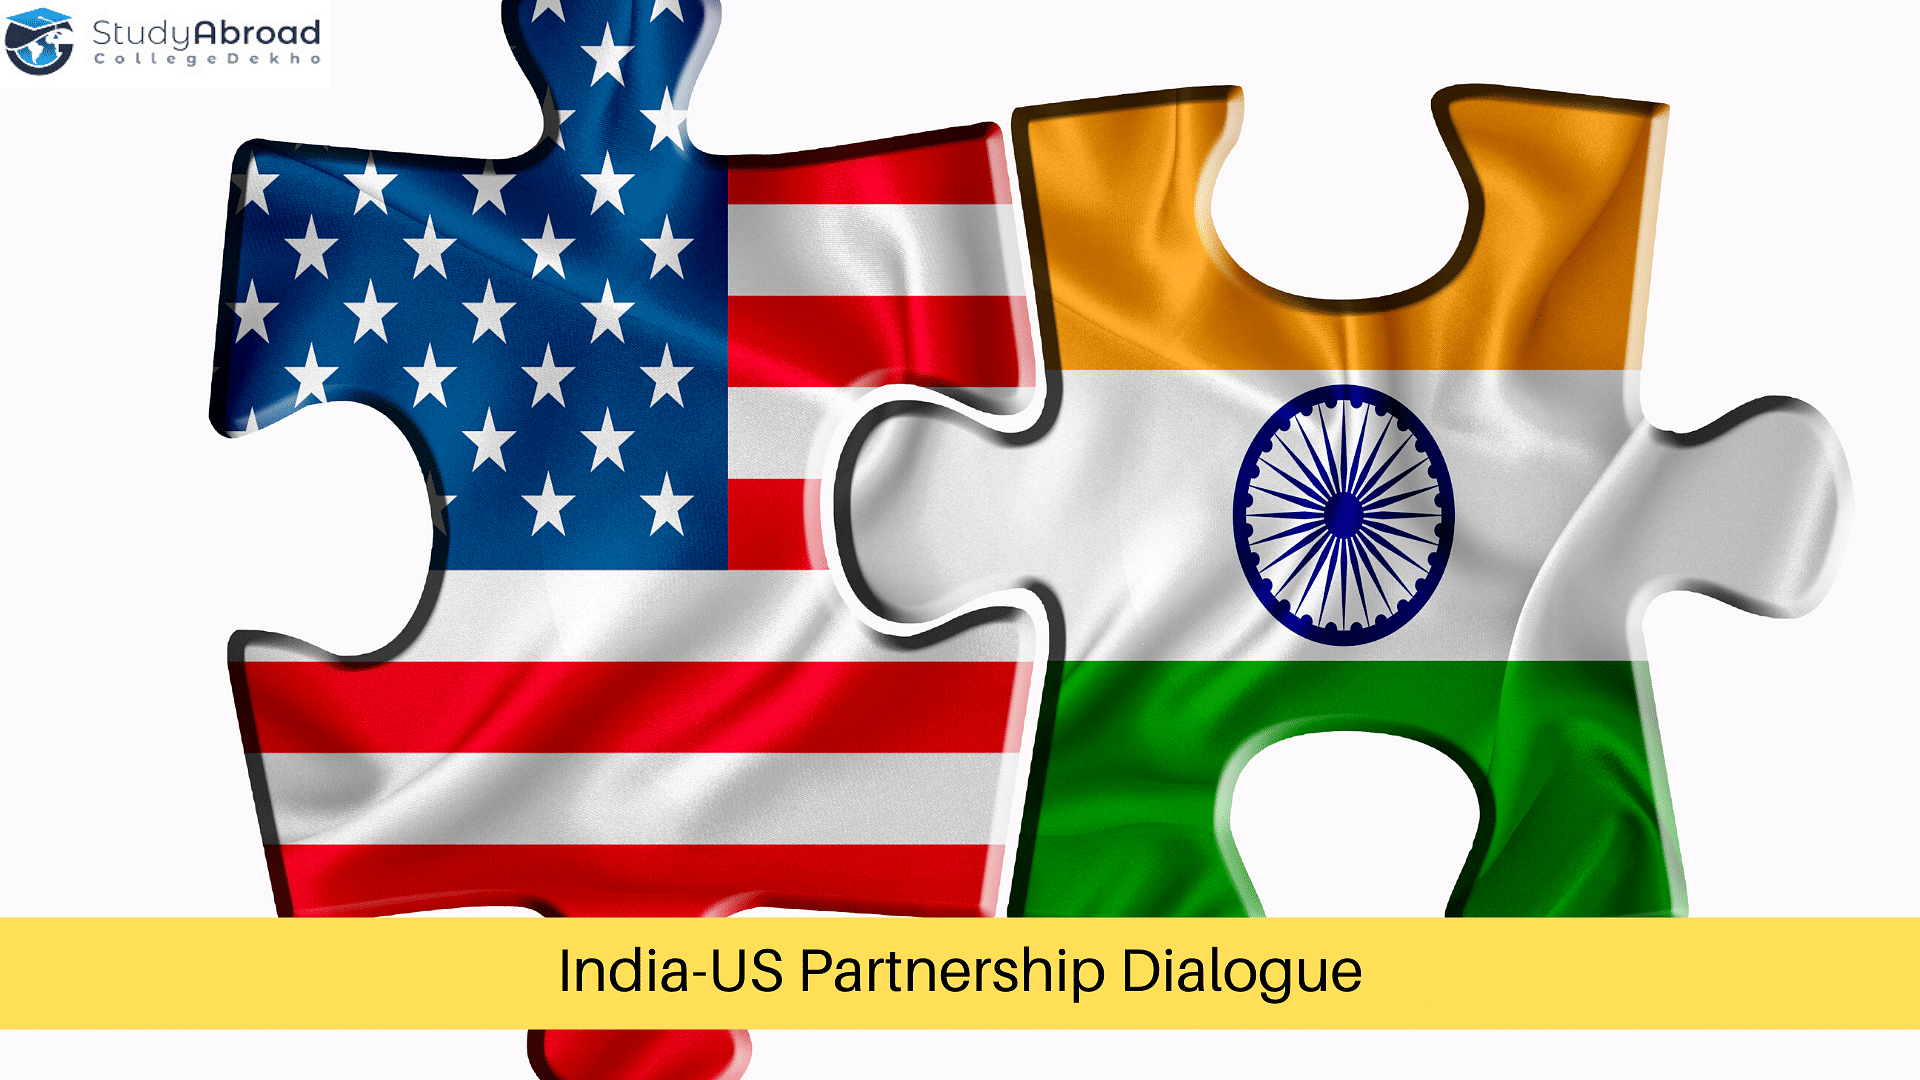 India-US Partnership for Education